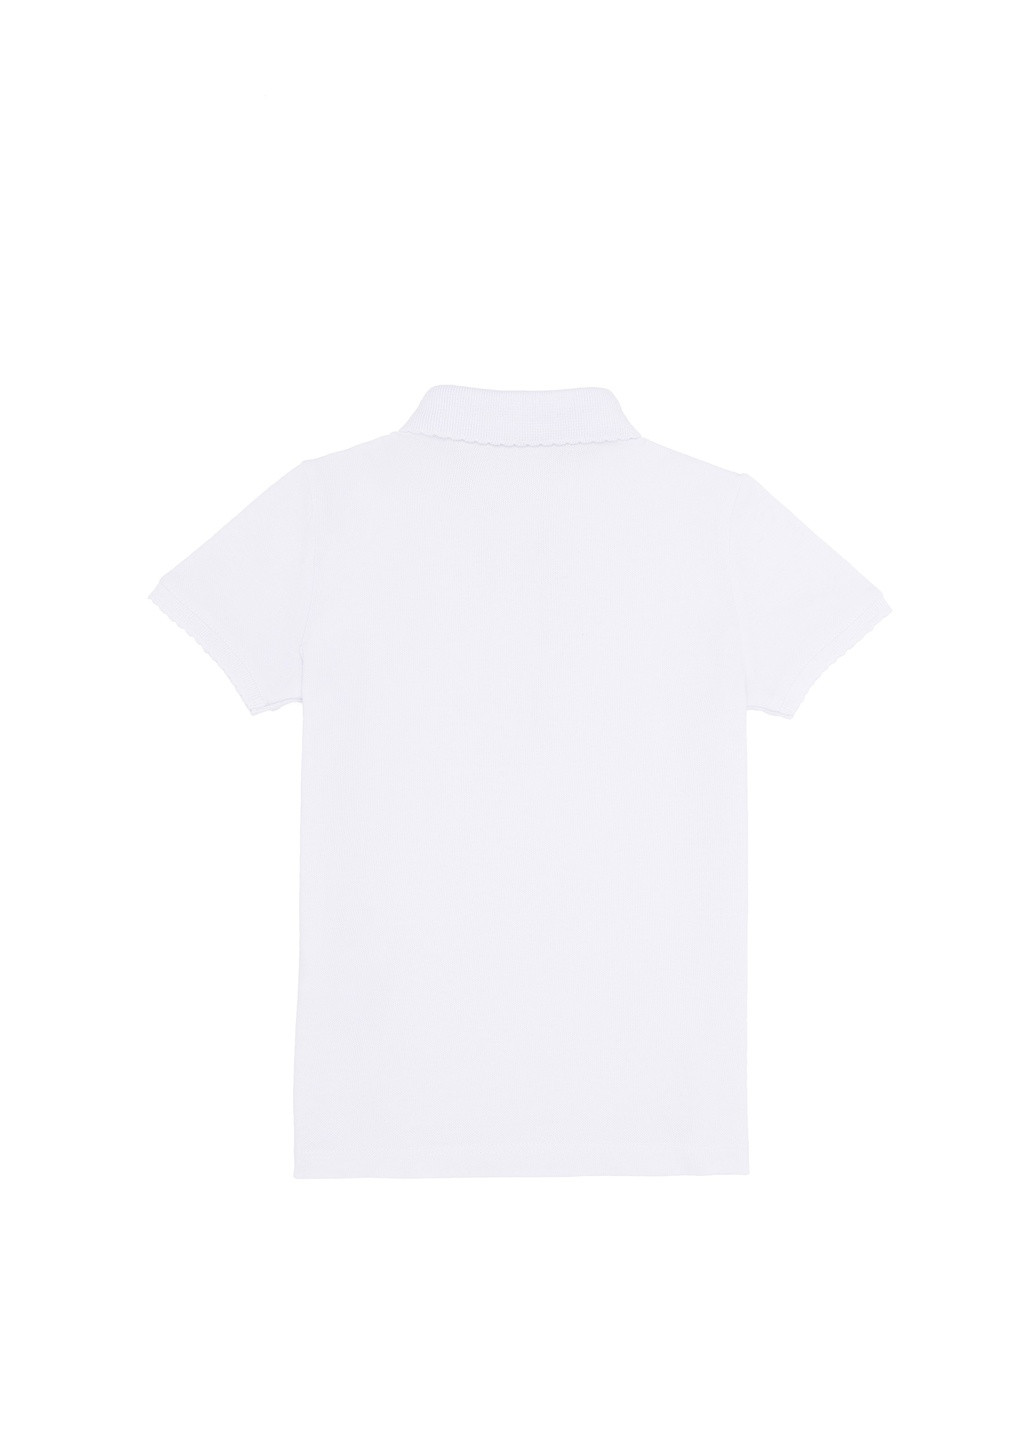 Белая детская футболка-футболка поло u.s.polo assn на девочку для девочки U.S. Polo Assn.